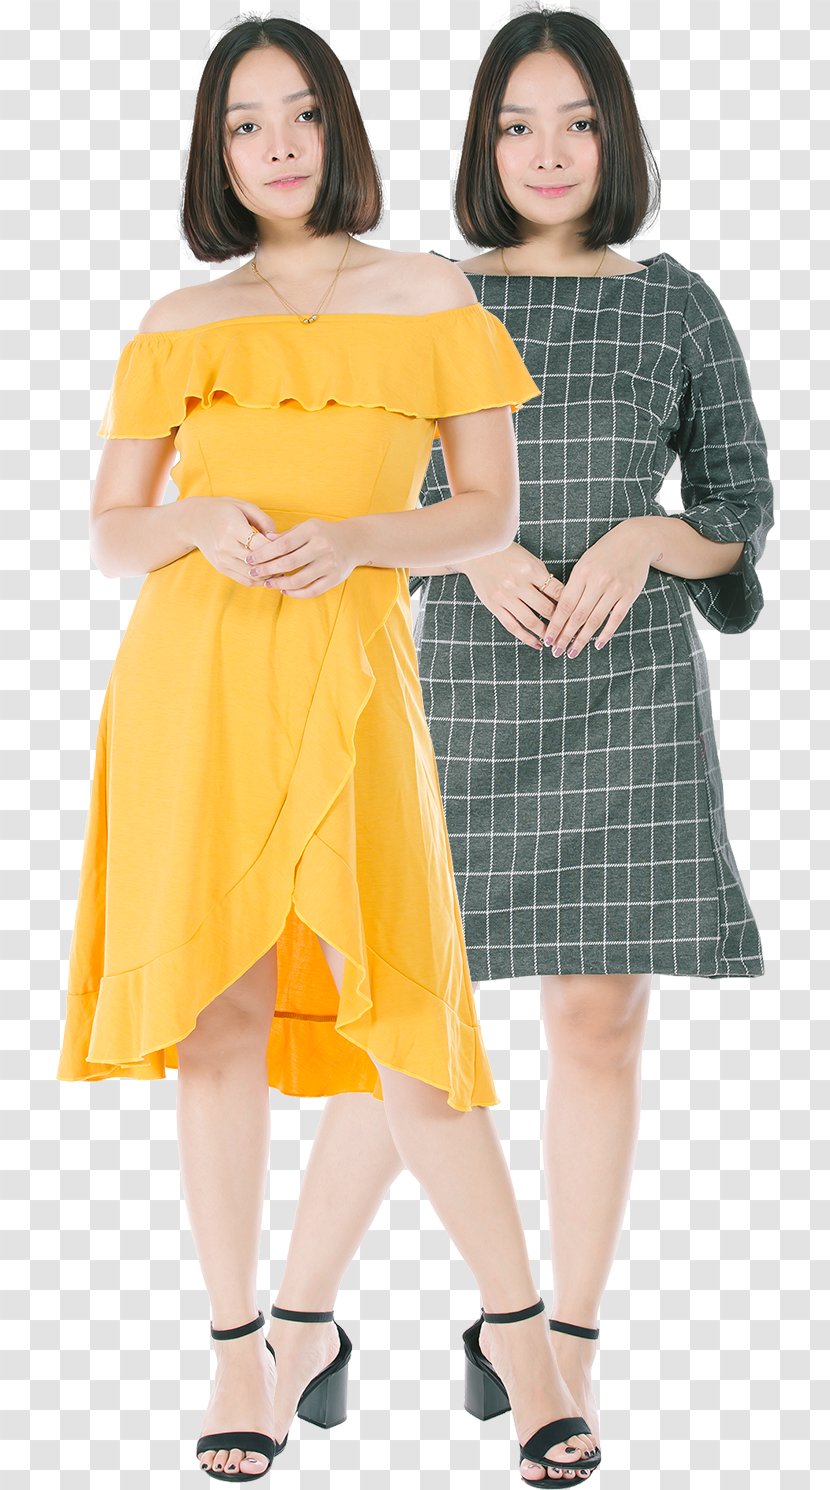 Orange Background - Fashion Model - Design Style Transparent PNG